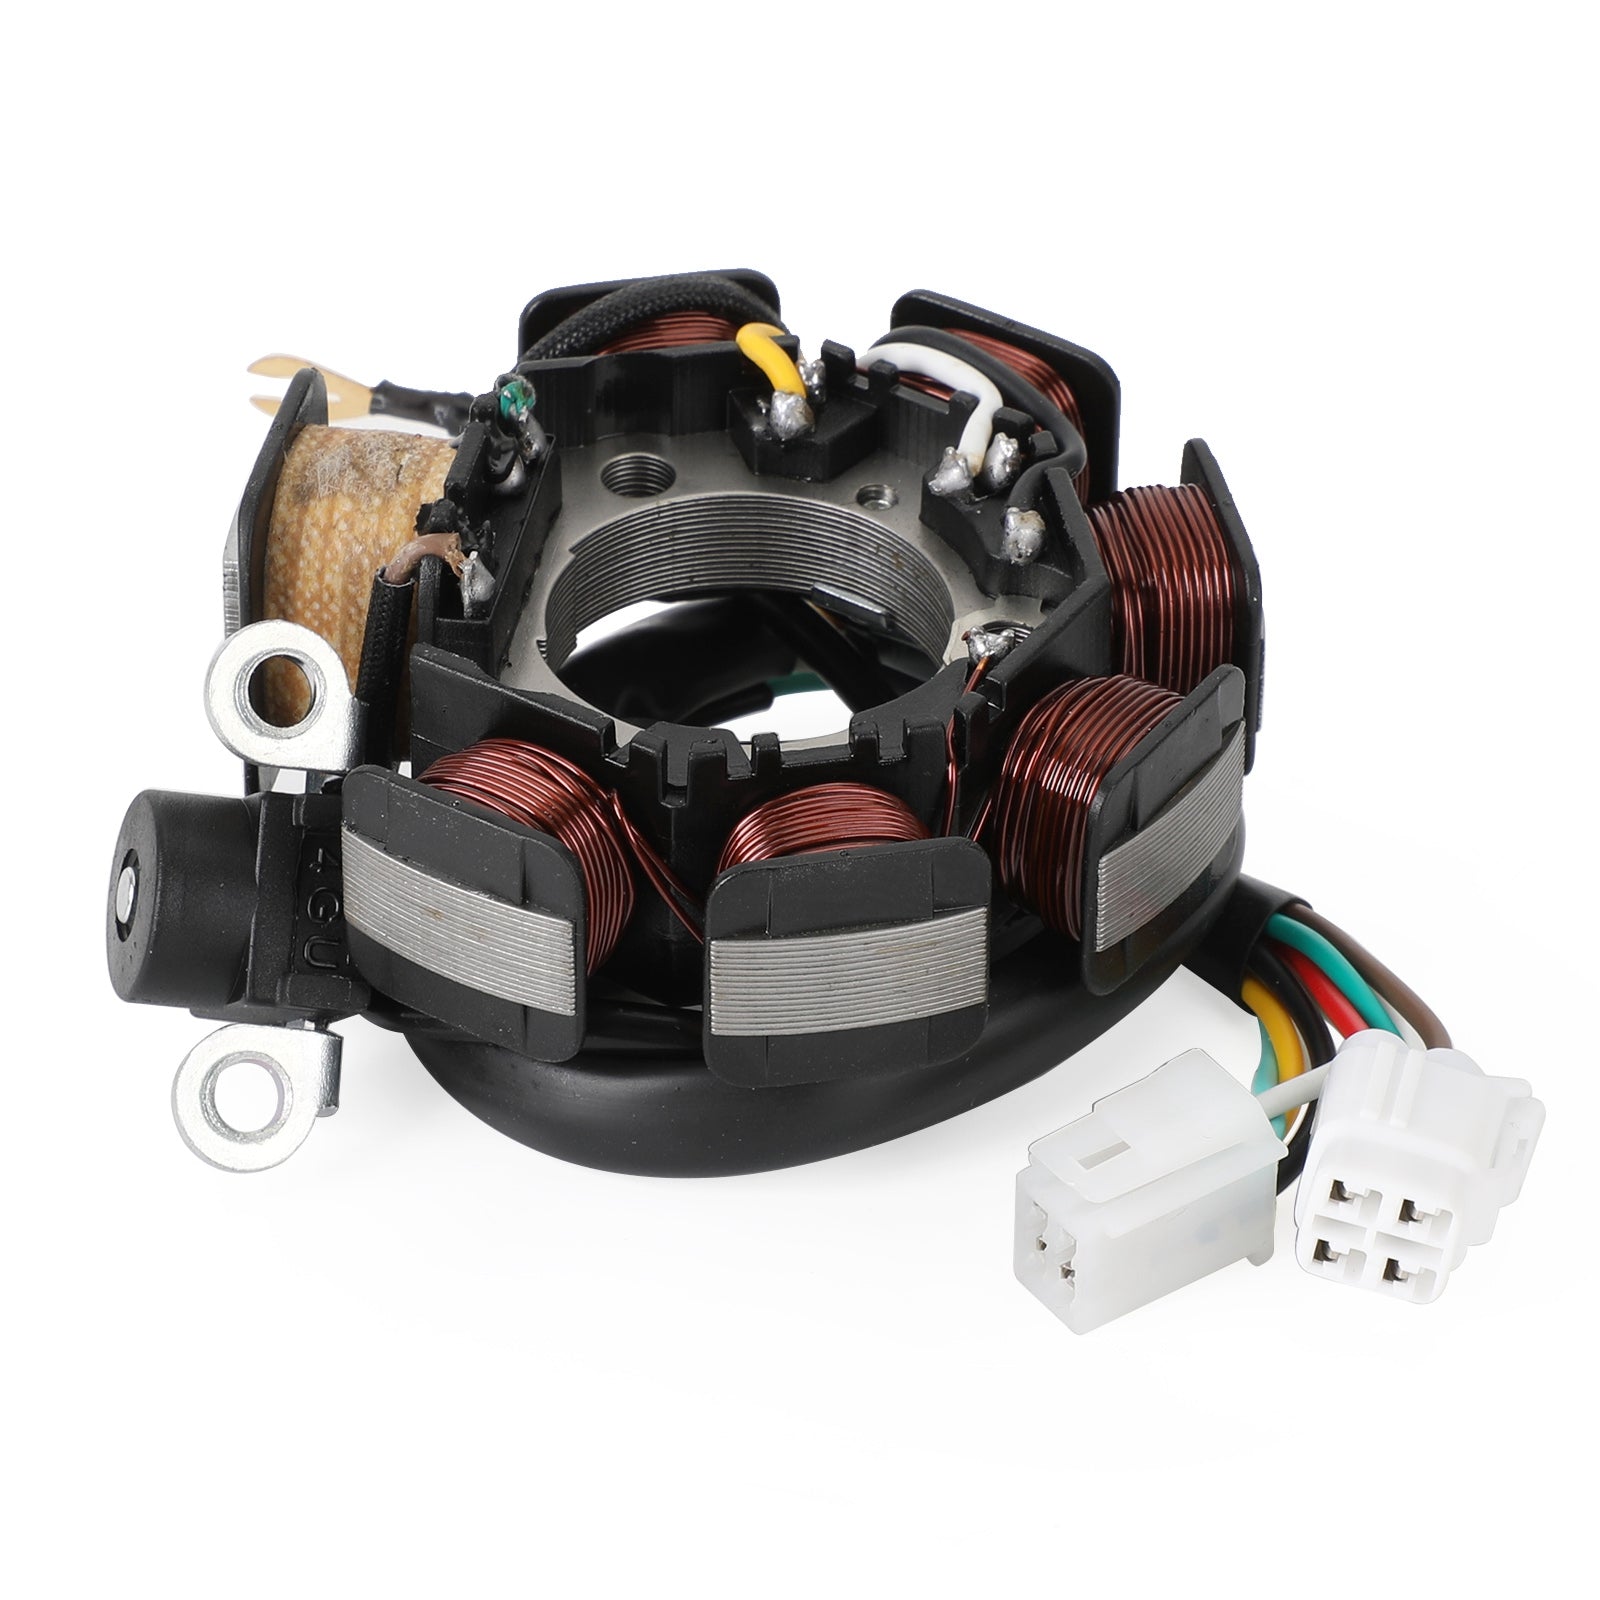 Magneto Coil Stator + Voltage Regulator + Gasket Assy For Yamaha TT-R 125 E L LE LWE CE07 CE11 CE22 Generic